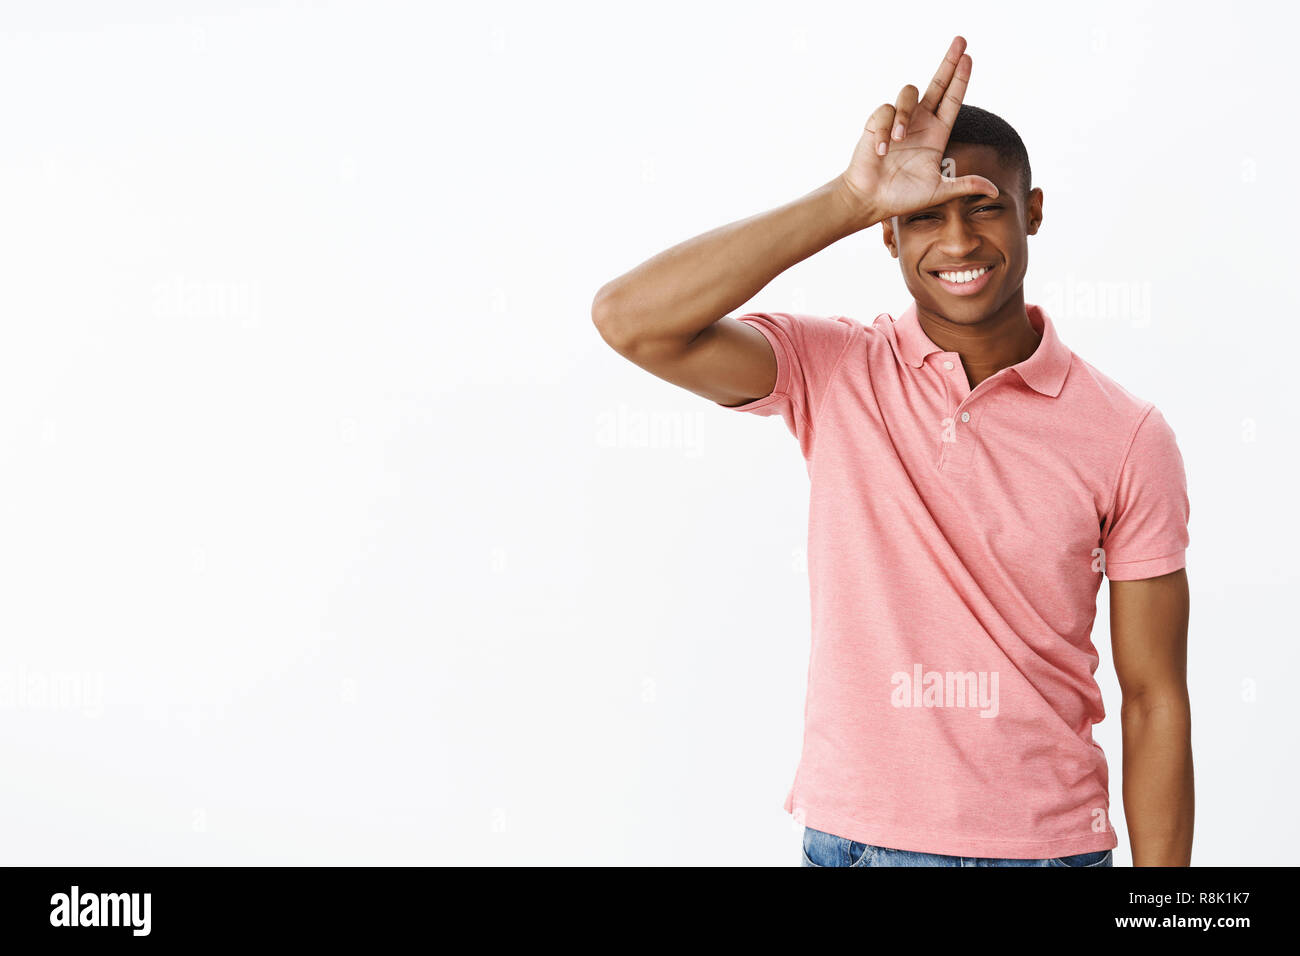 Verlierer zu Hause bleiben. Freundlich, fröhlich und selbstbewussten jungen afrikanischen amerikanischen männlichen Kursteilnehmer in Pink polo shirt, Buchstaben L auf der Stirn als spöttisch Freund letzten, posieren heiter über graue Wand Stockfoto